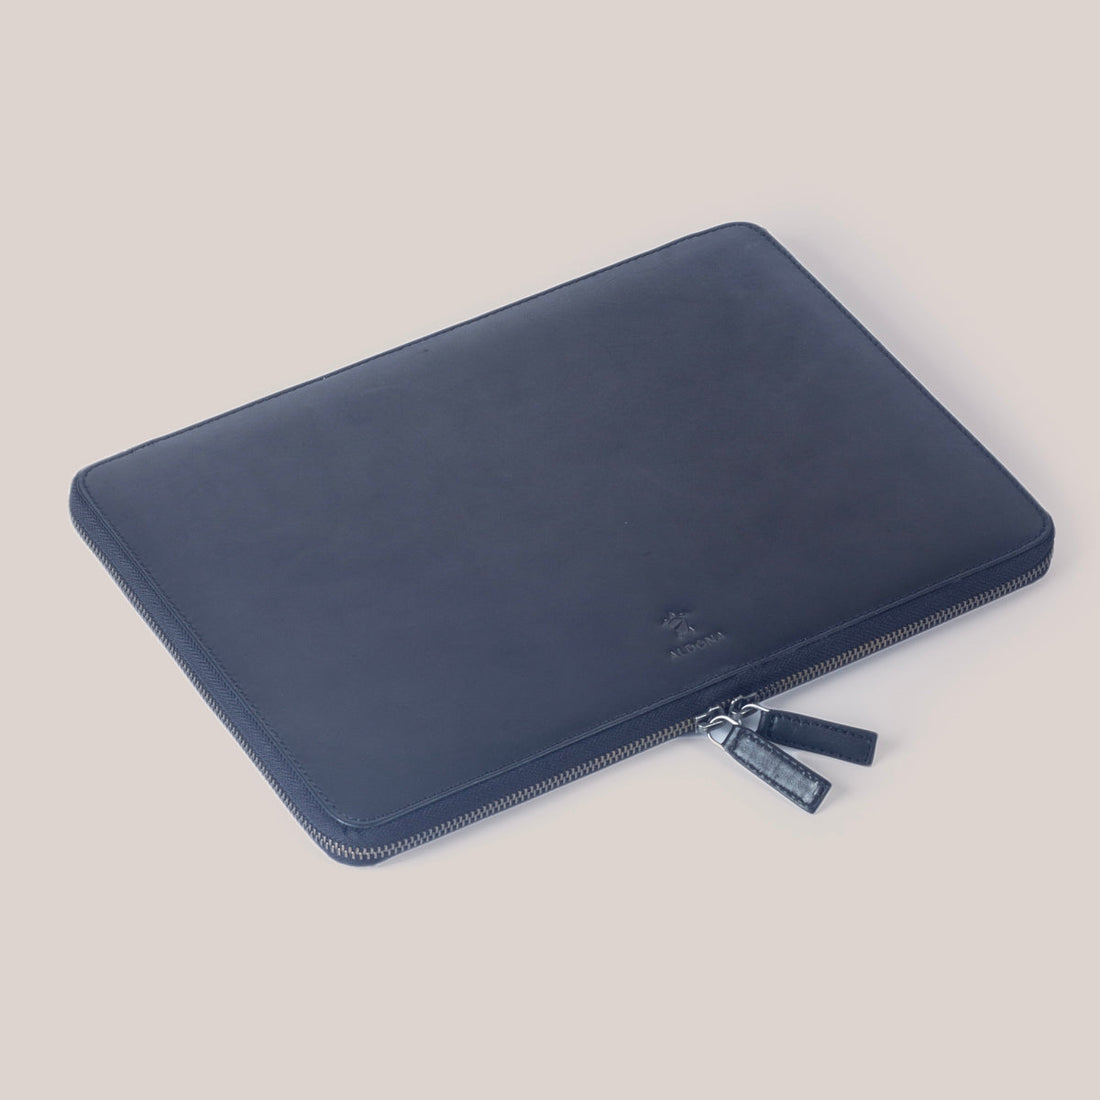 MacBook Air 15 Zippered Laptop Case - Cognac